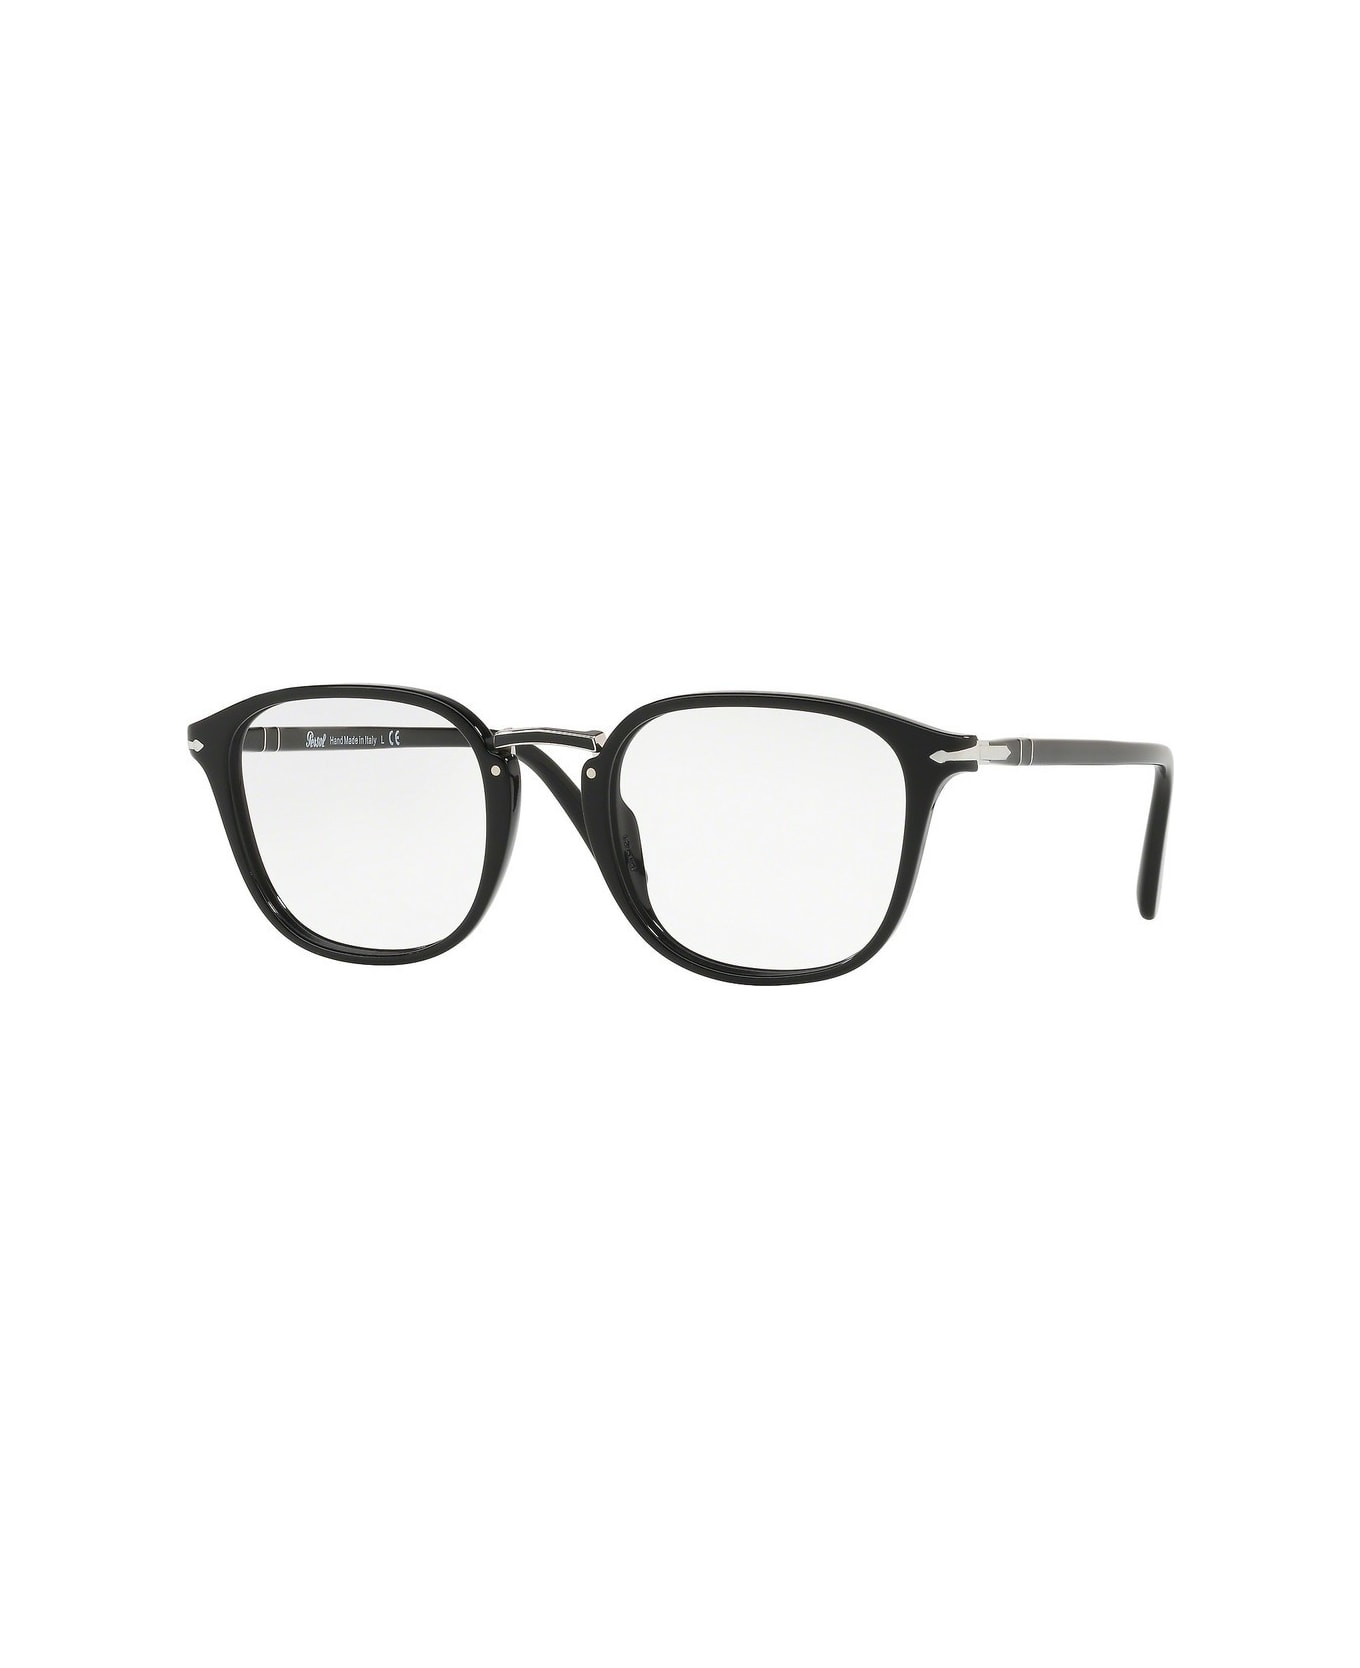 Persol Po3187v Glasses - Nero